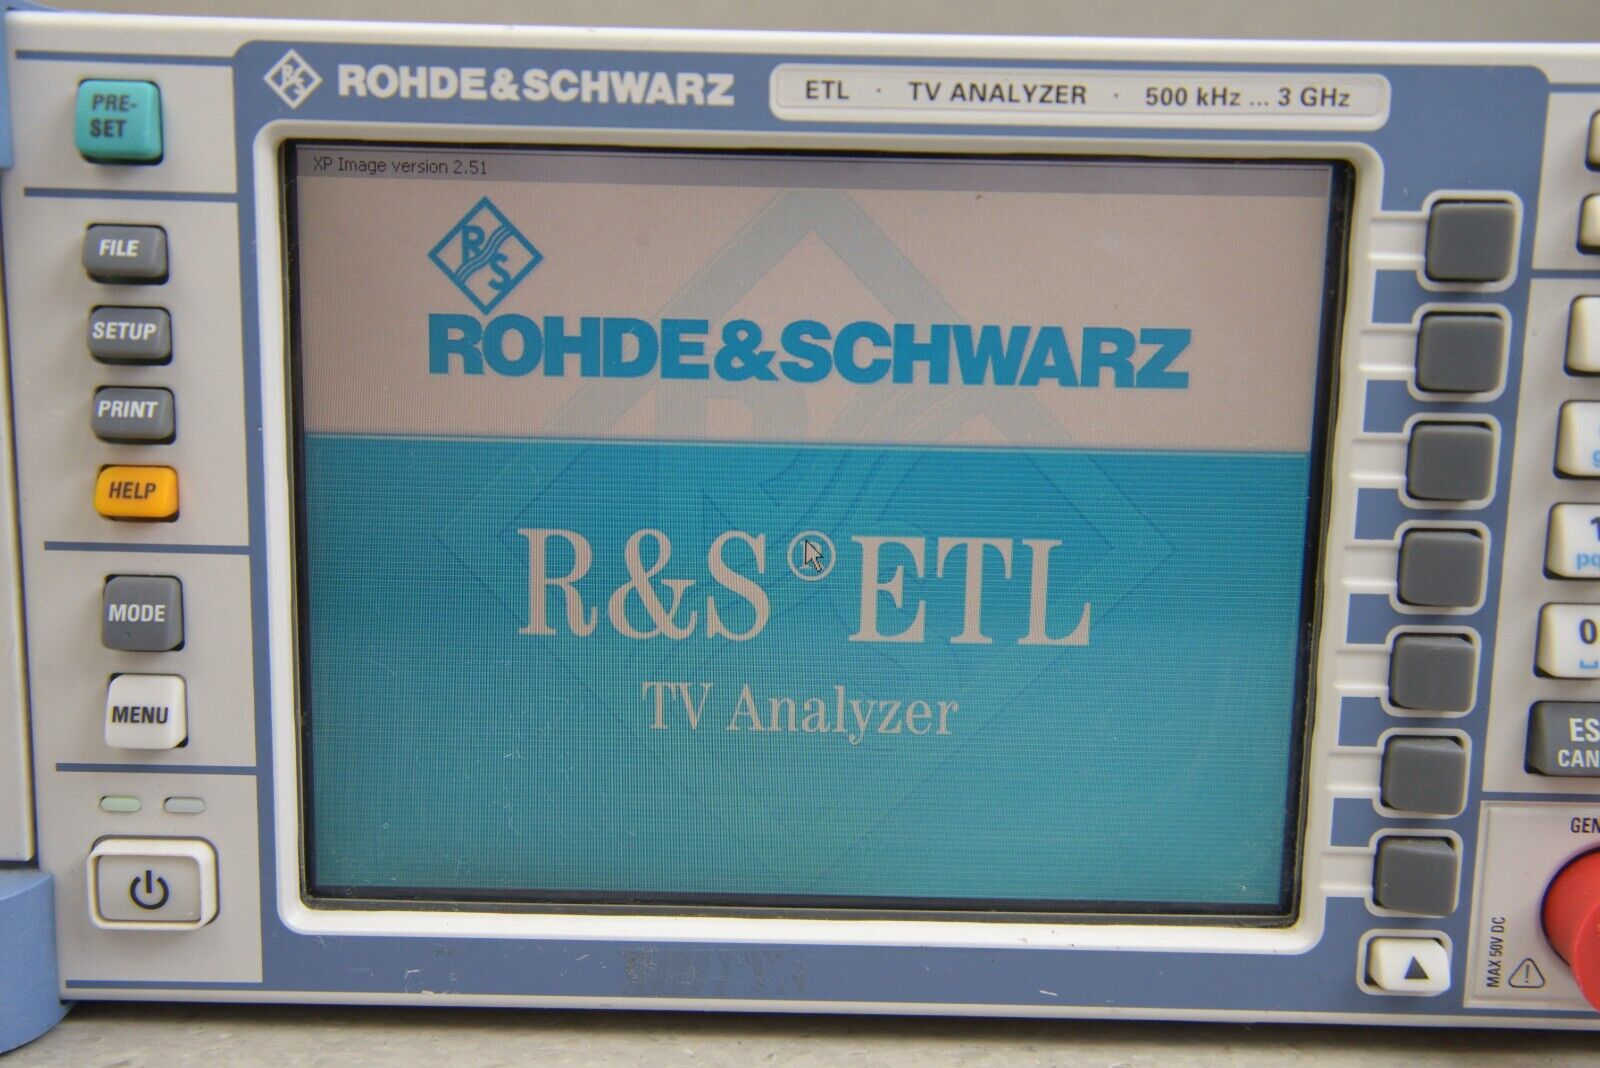 Rohde & Schwarz ETL 500khz 3GHz TV Analyzer/Receiver, Spectrum Analyzer  w/Option